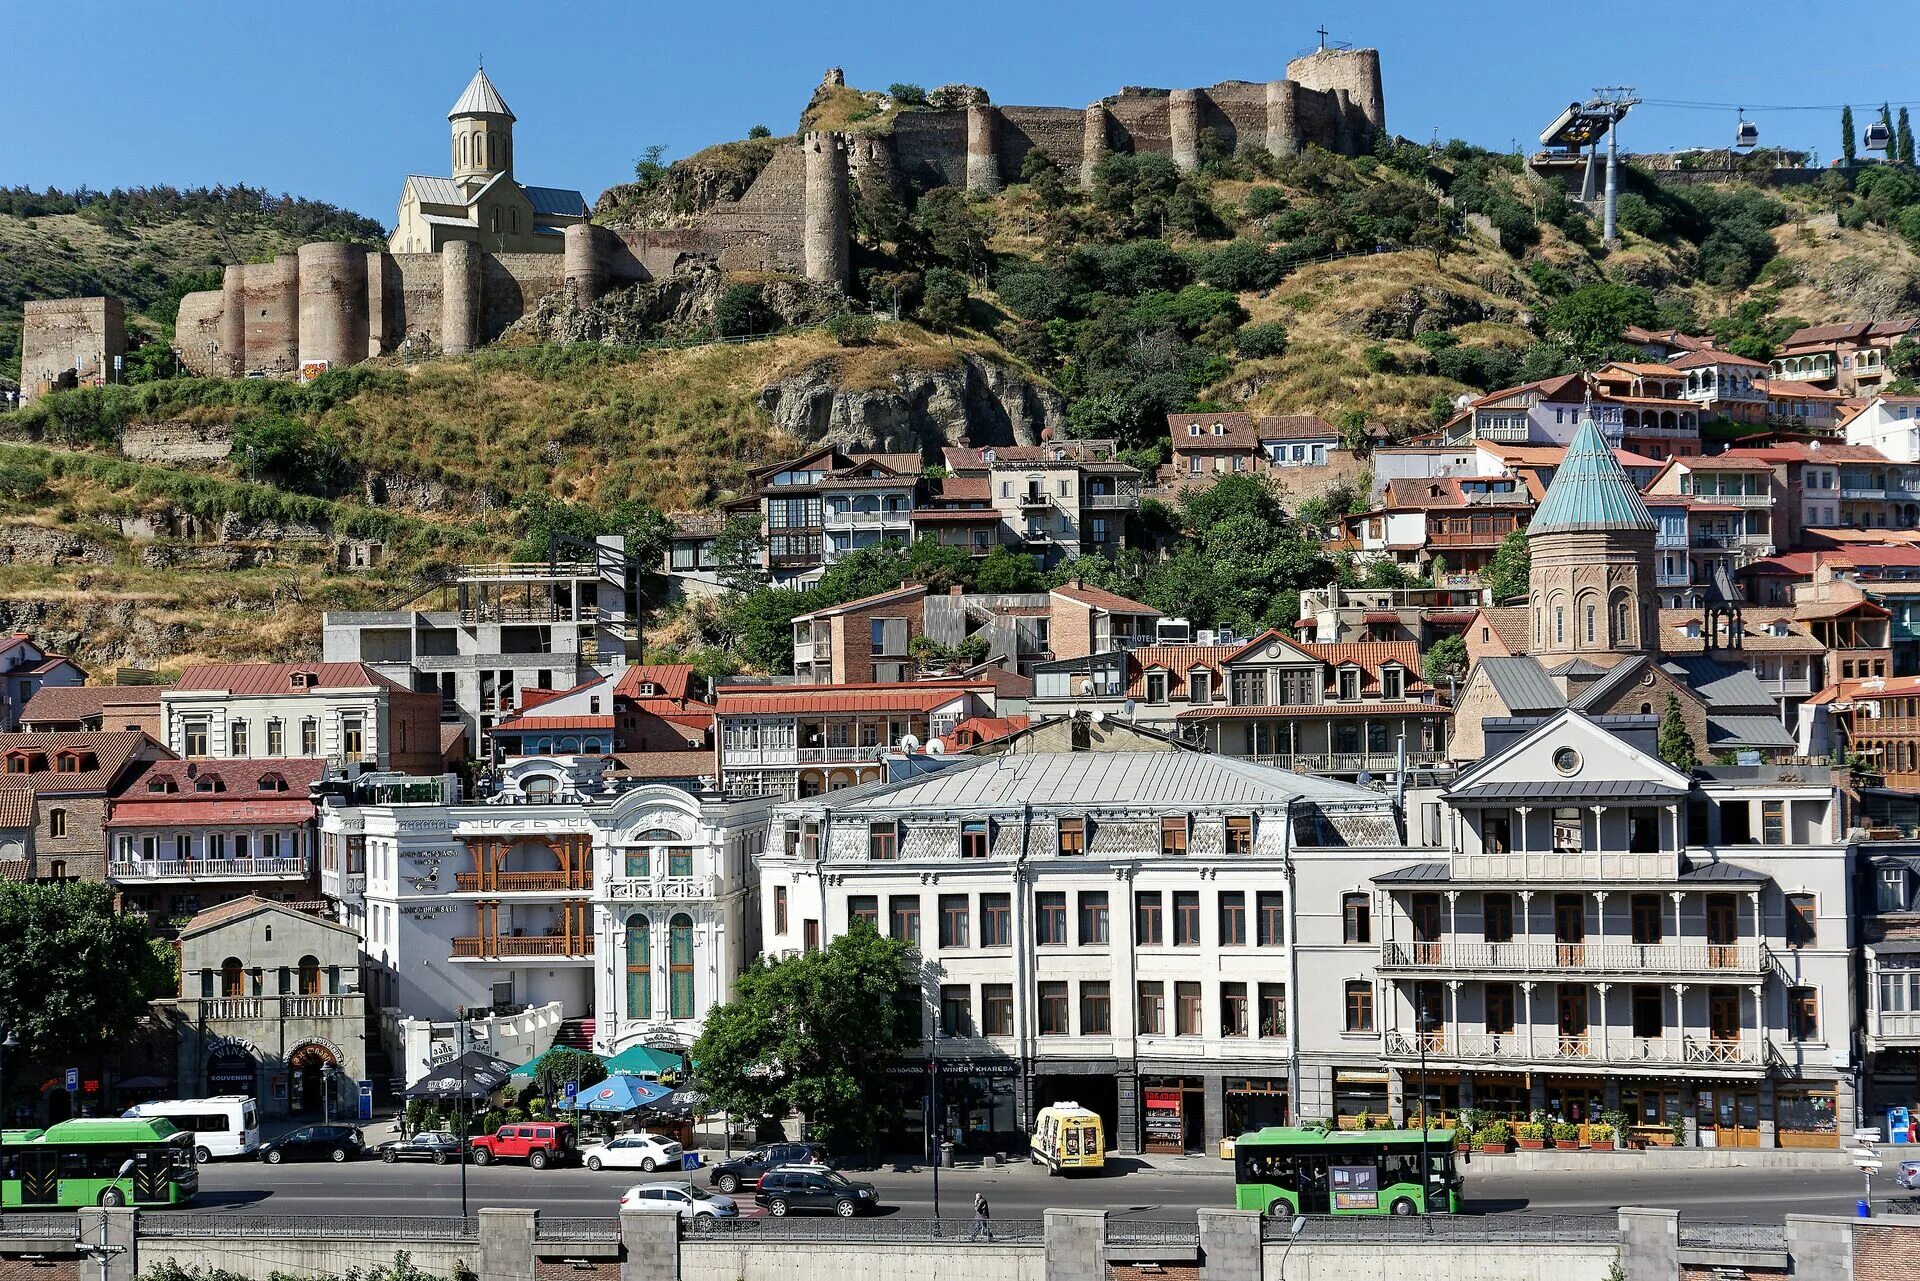 Где город тбилиси. Крепость Нарикала в Тбилиси. Тбилиси 2023. Нарикала Тбилиси реконструкция. Тбилиси столица Грузии 455 год.